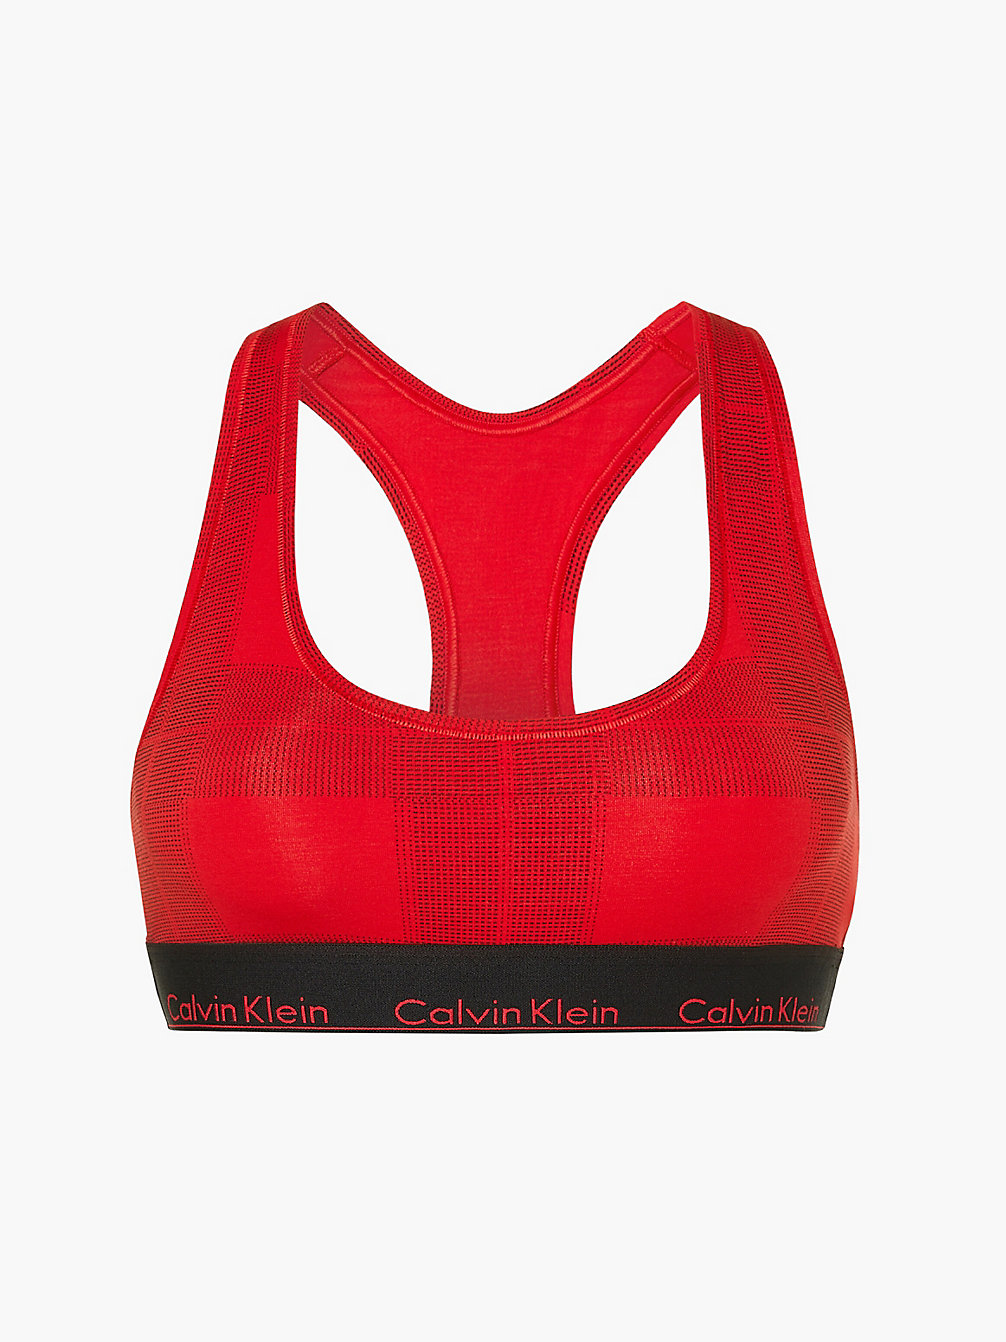 TEXTURED PLAID_EXACT Bralette – Modern Cotton undefined Damen Calvin Klein